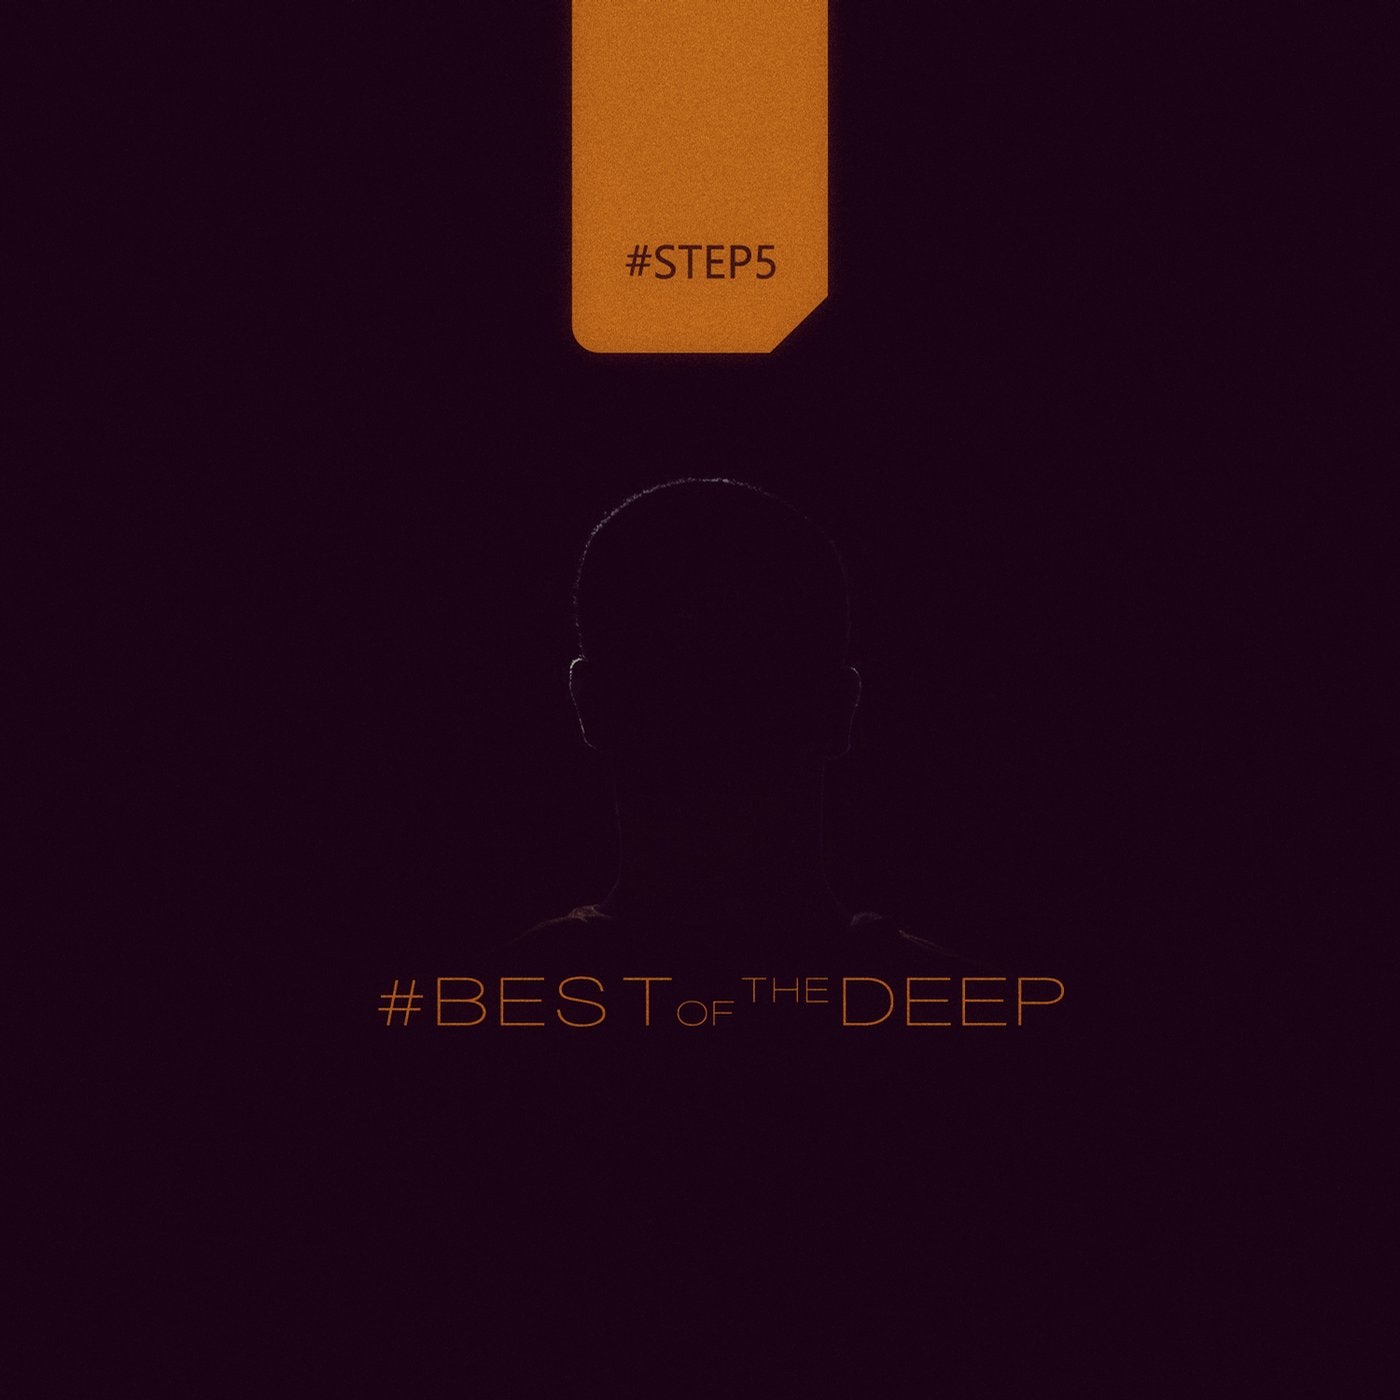 #bestofthedeep #step5